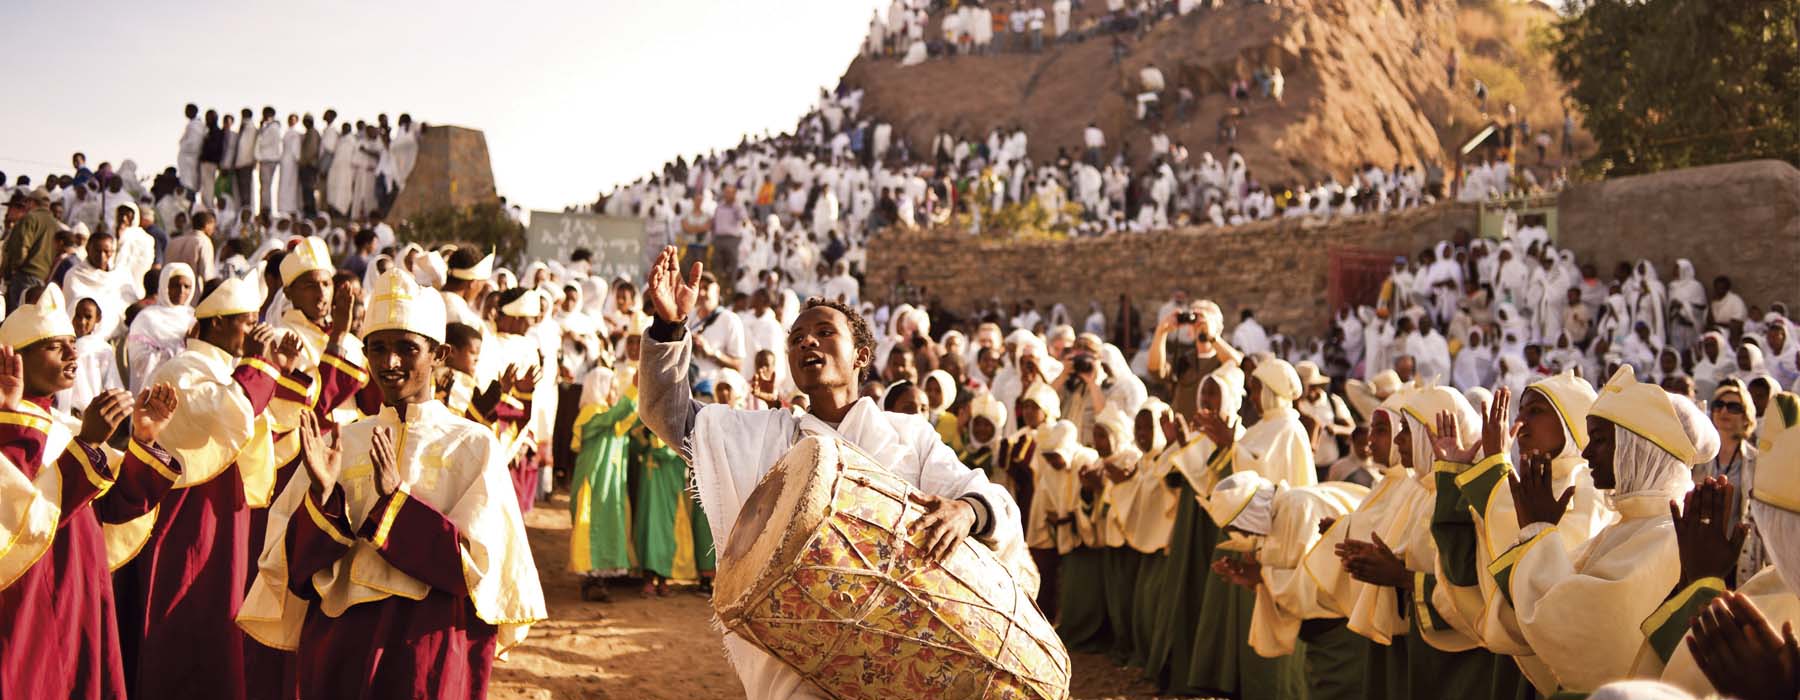 Bouts du monde Ethiopie